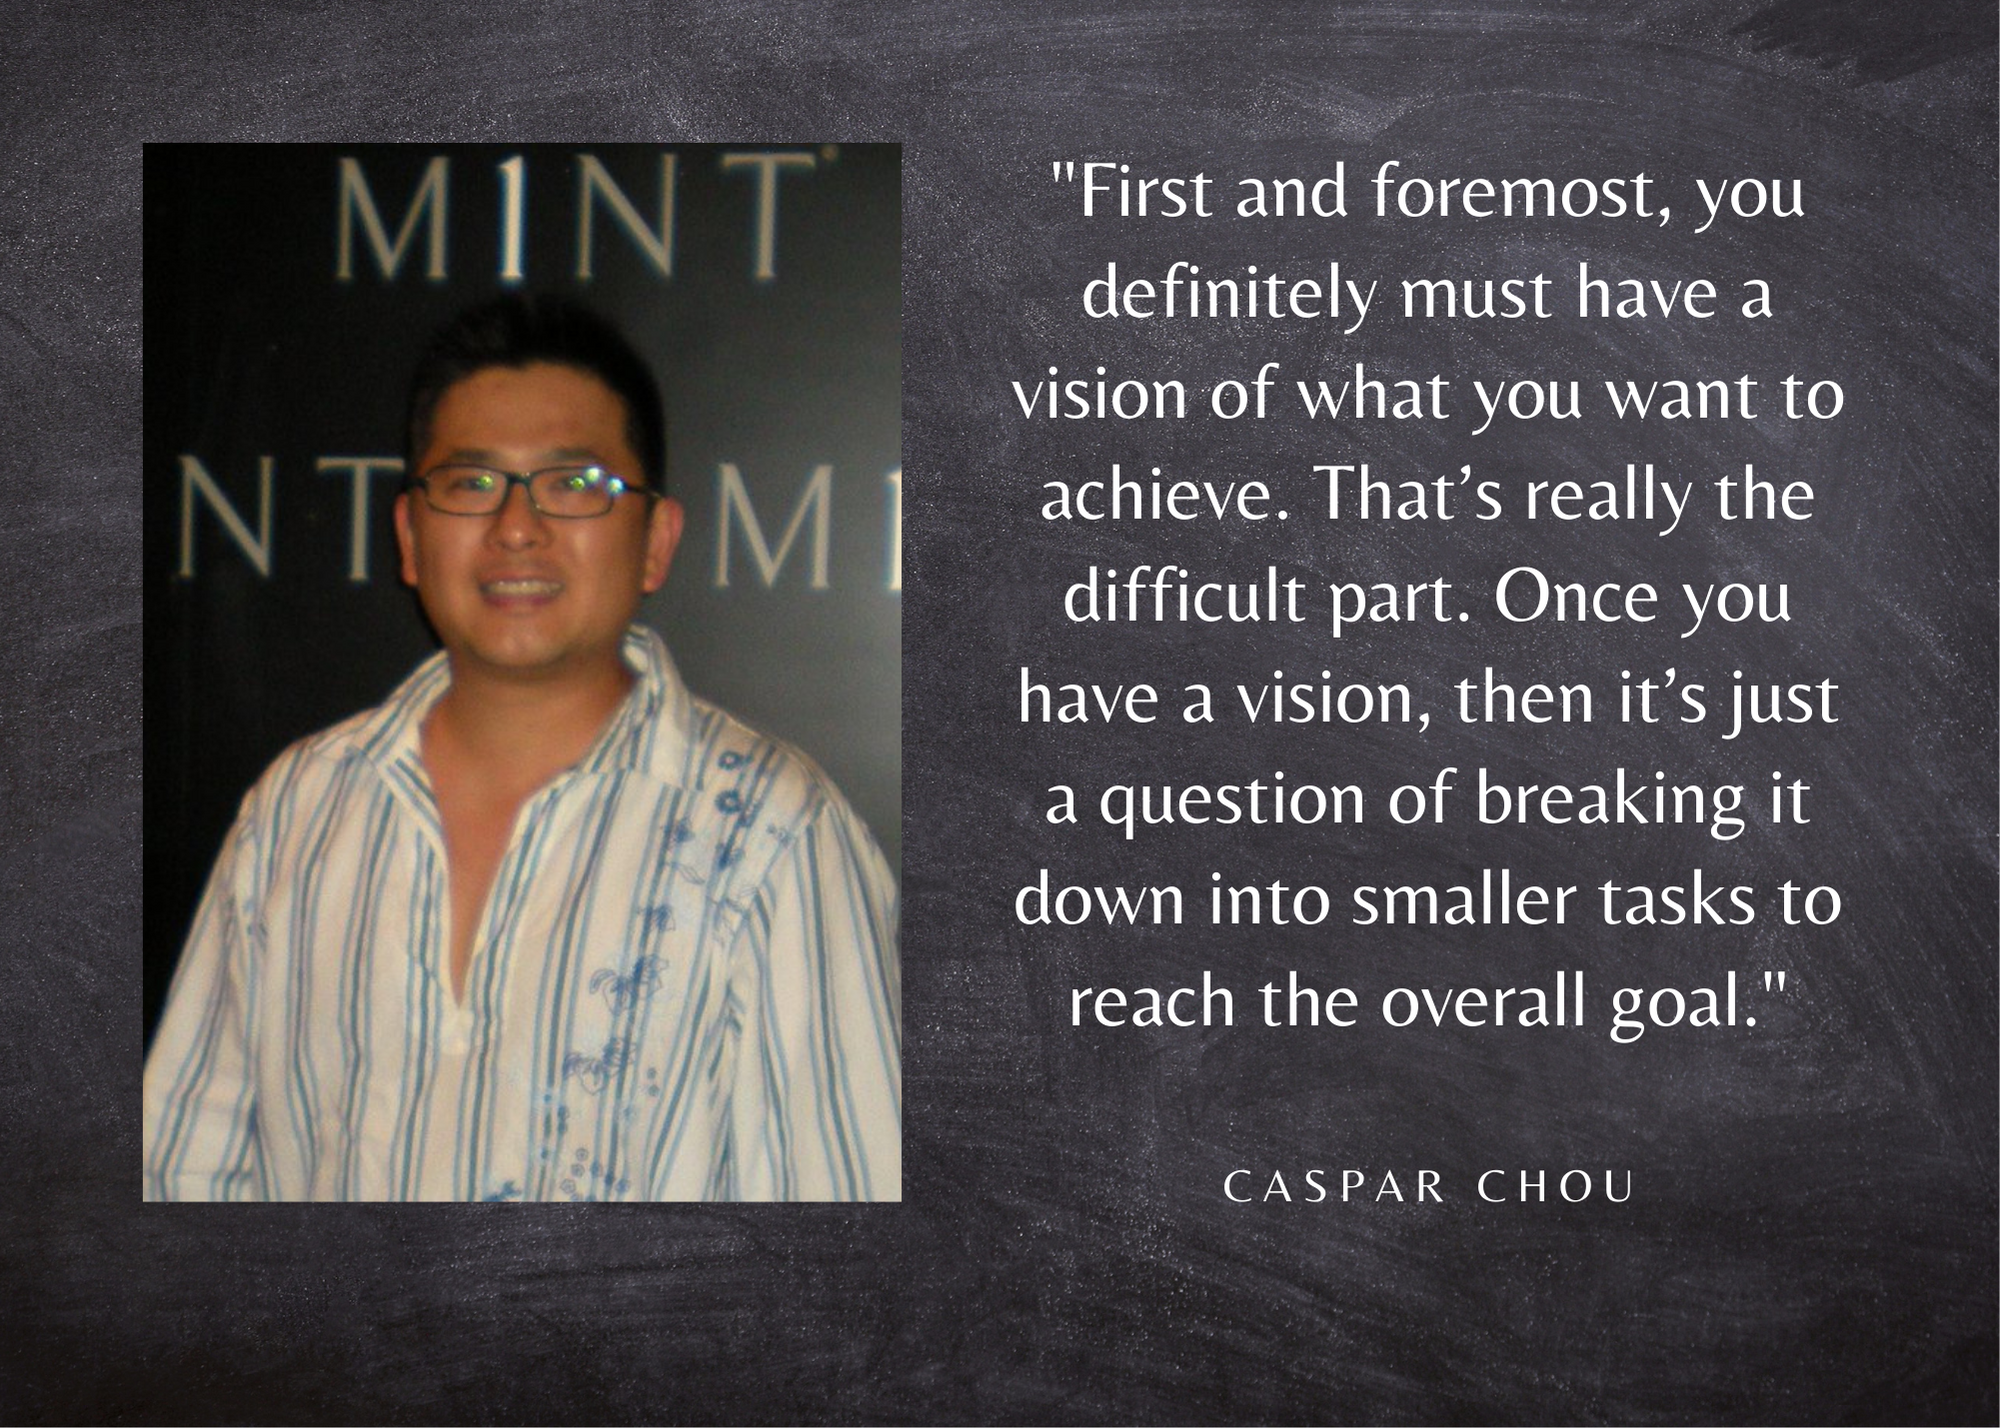 Caspar Chou, Thursday, March 3, 2022, Press release picture